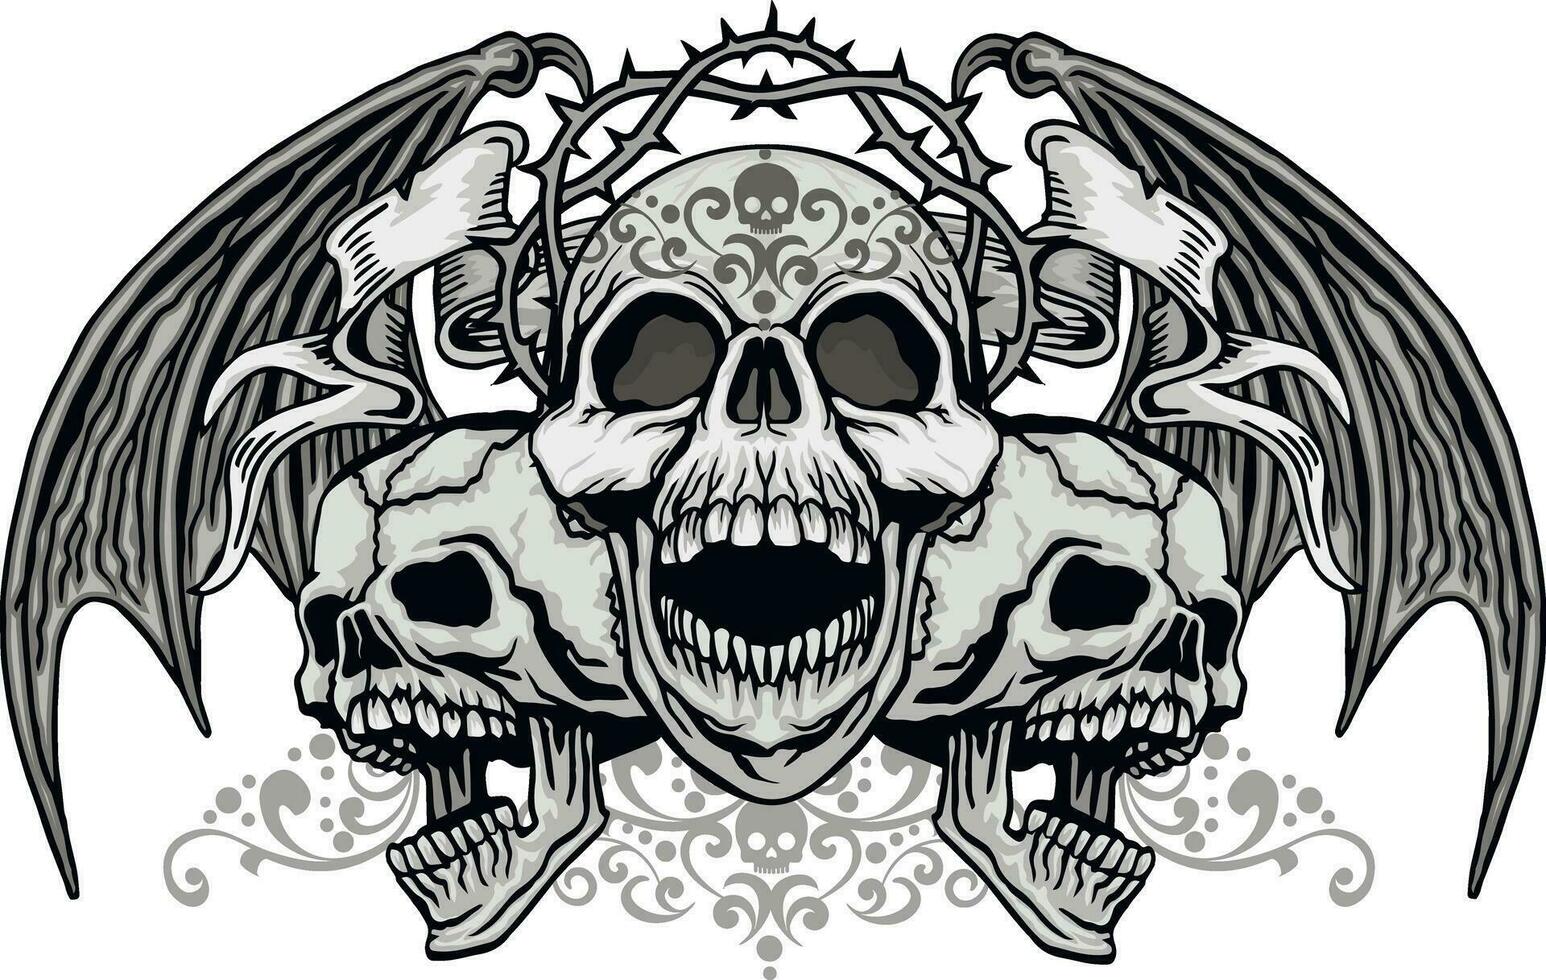 cartel gótico con calavera y alas, camisetas de diseño vintage grunge vector